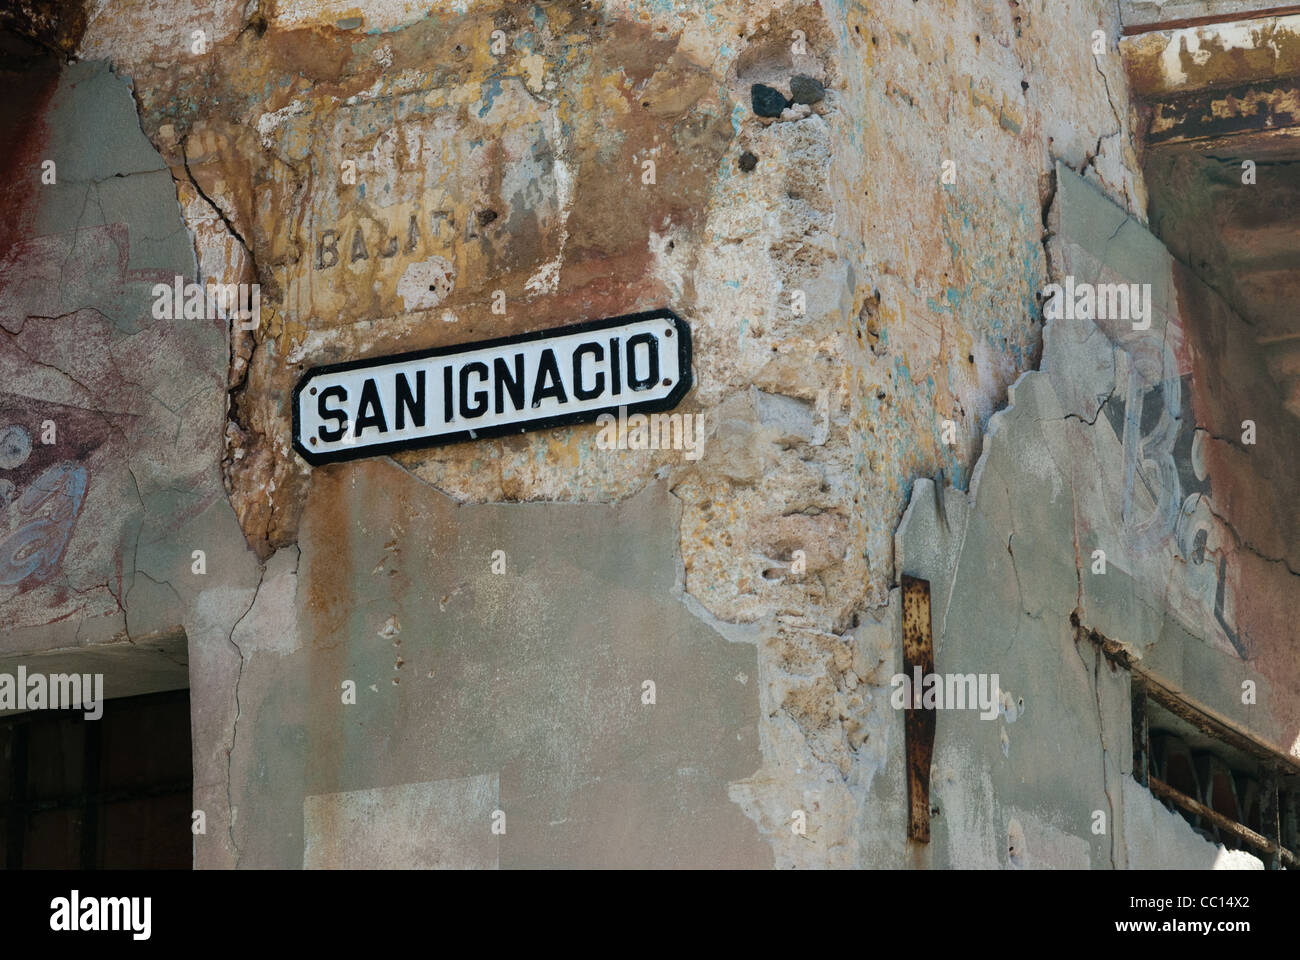 San Ignacio, calle signo, La Habana, Cuba Foto de stock